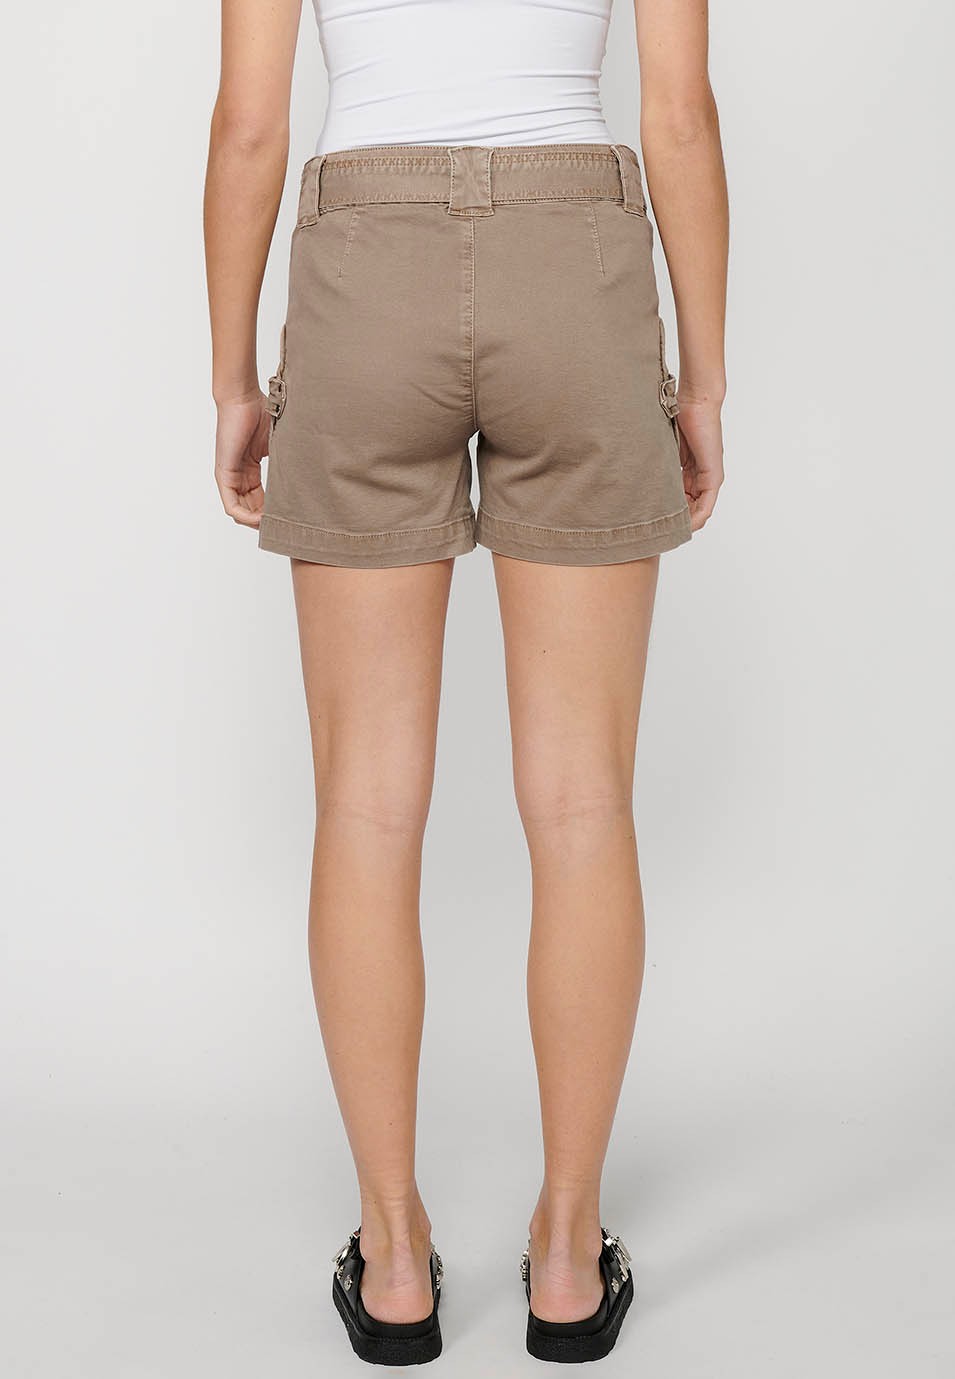 Pantalón corto Short con Cintura con cinturón y Bolsillos de plastrón de Color Beige para Mujer